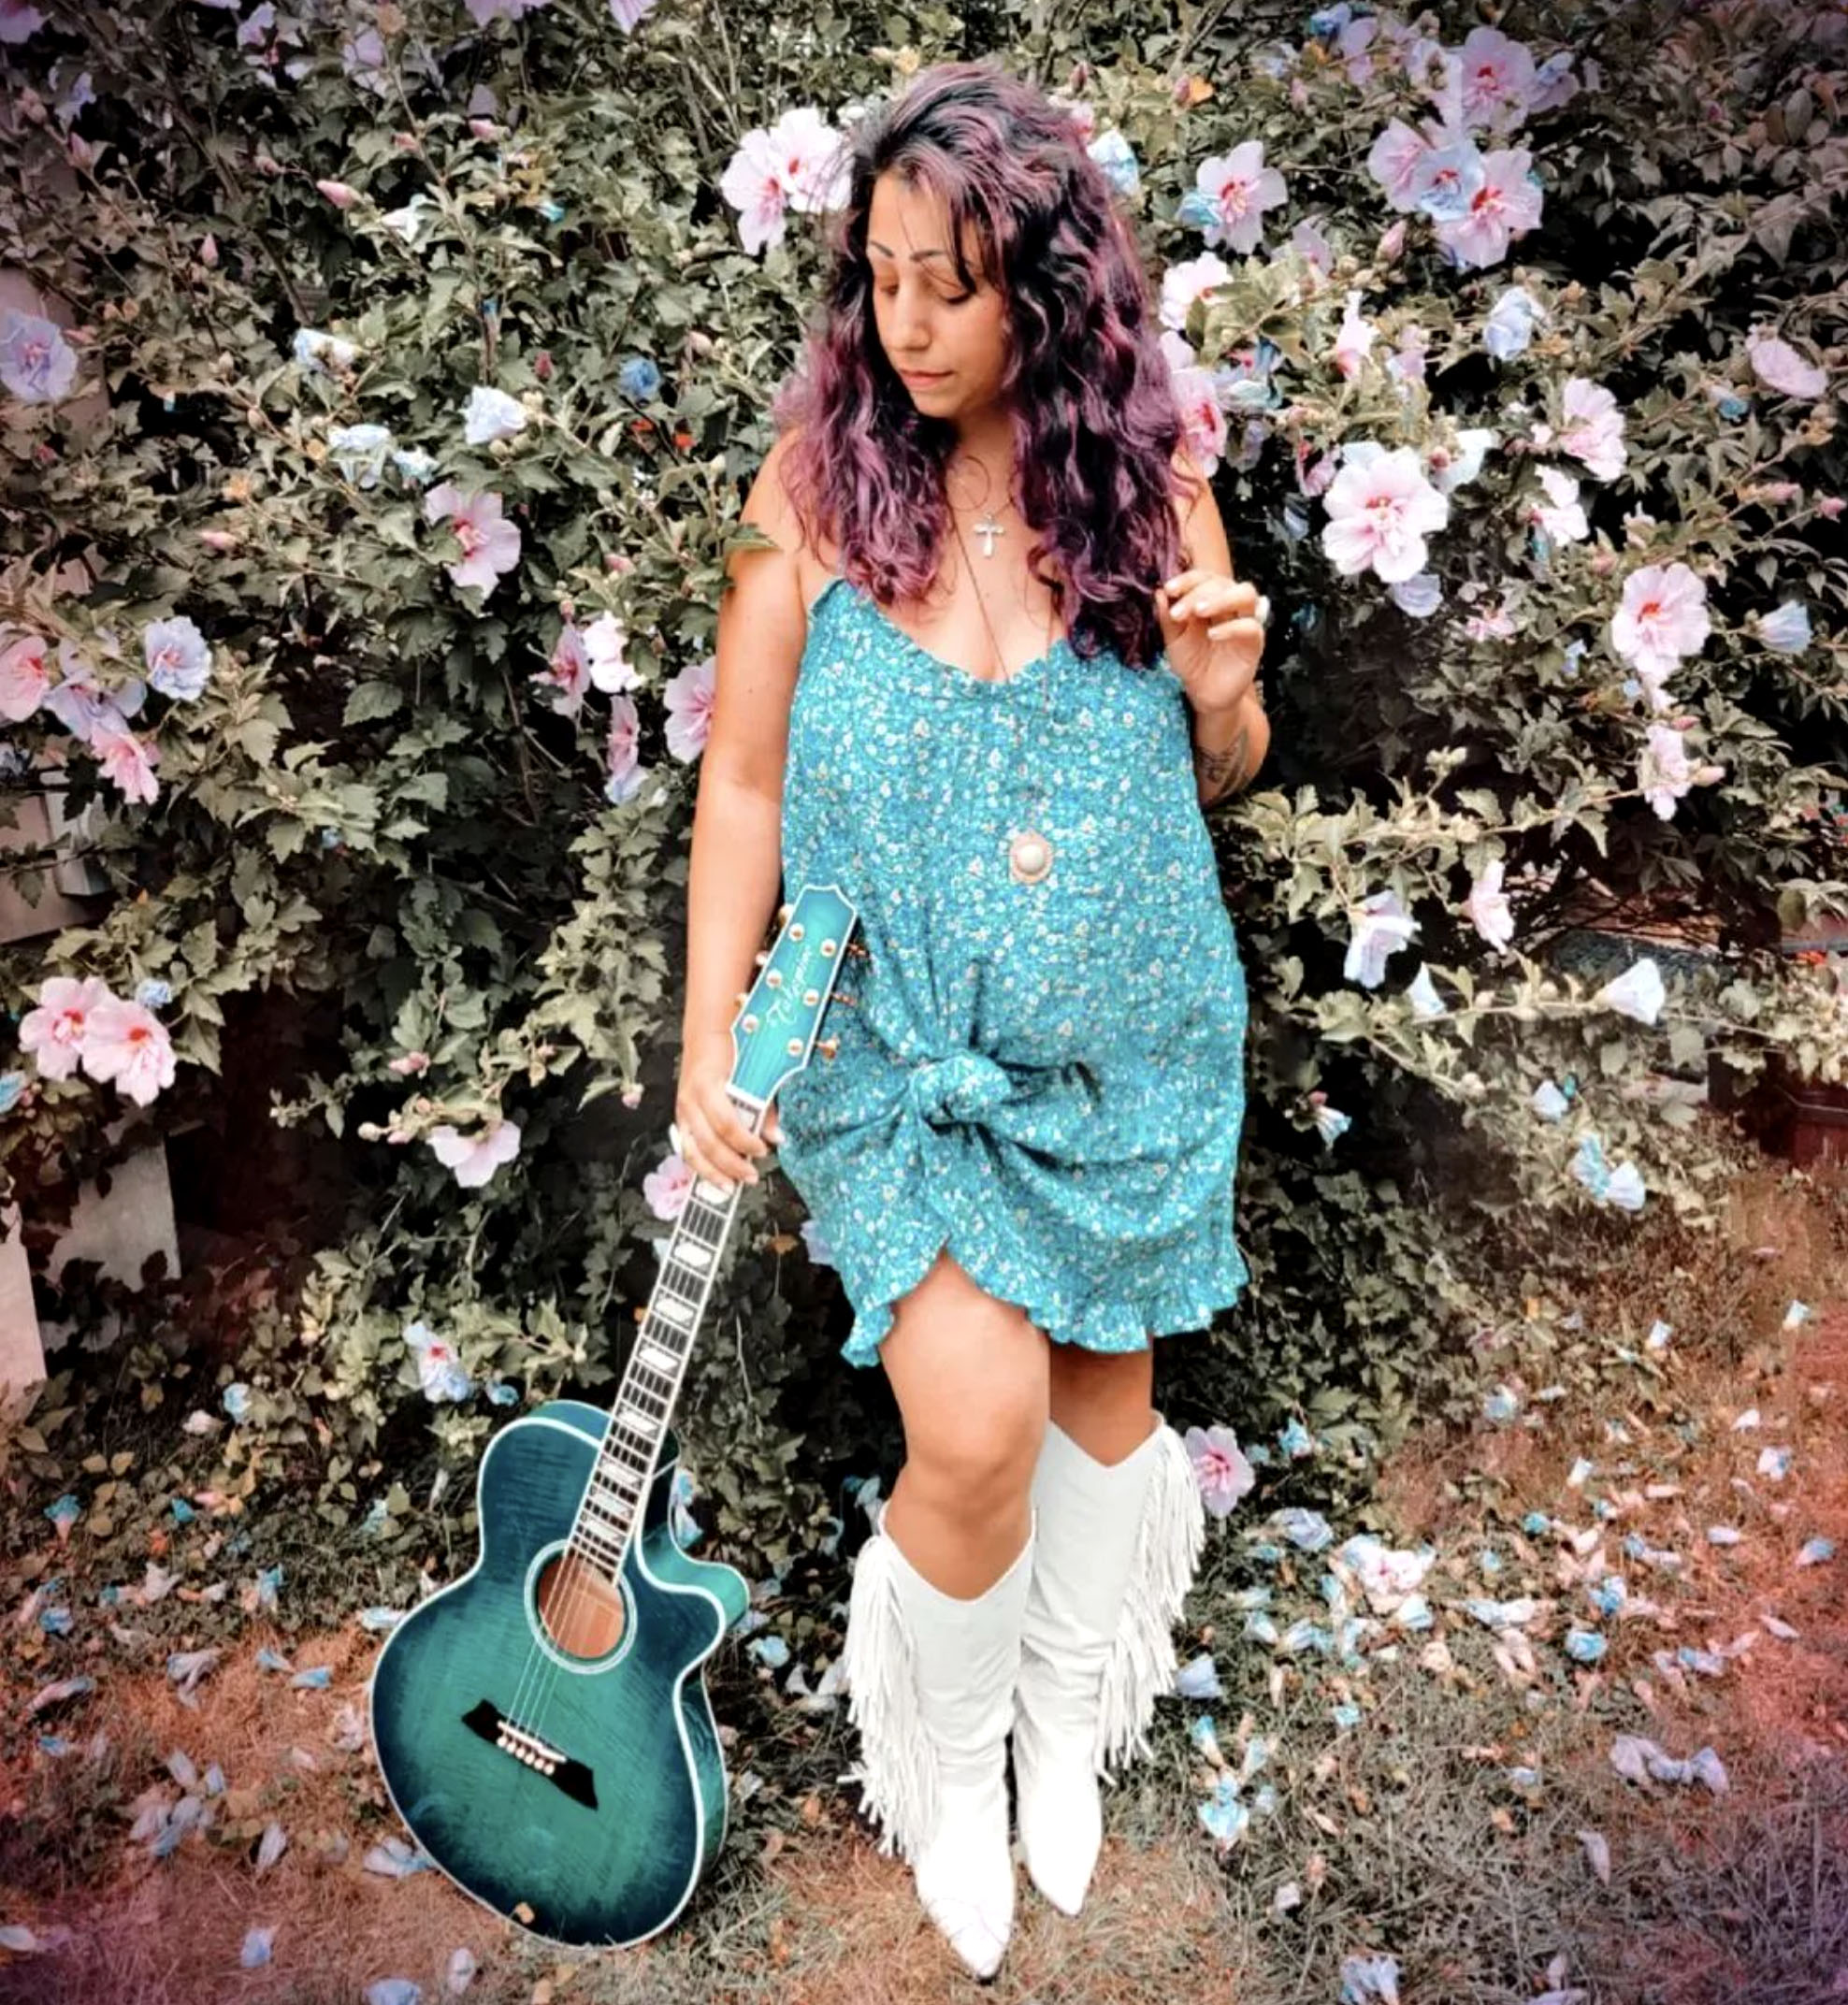 Nikki Briar with teal guitar.